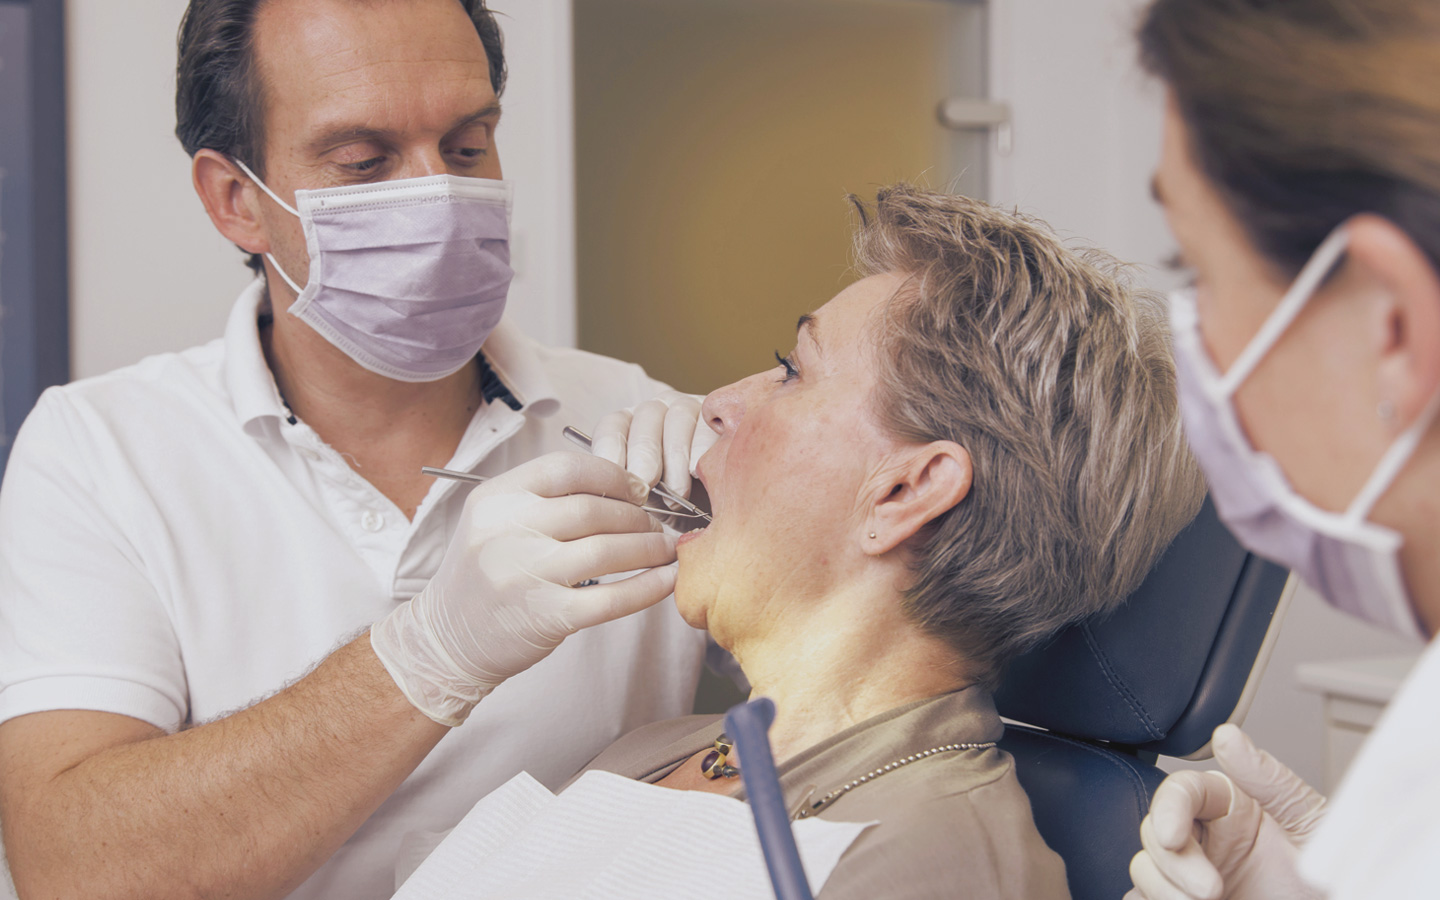 Foto: Ein Zahnarzt behandelt gerade eine Patientin.